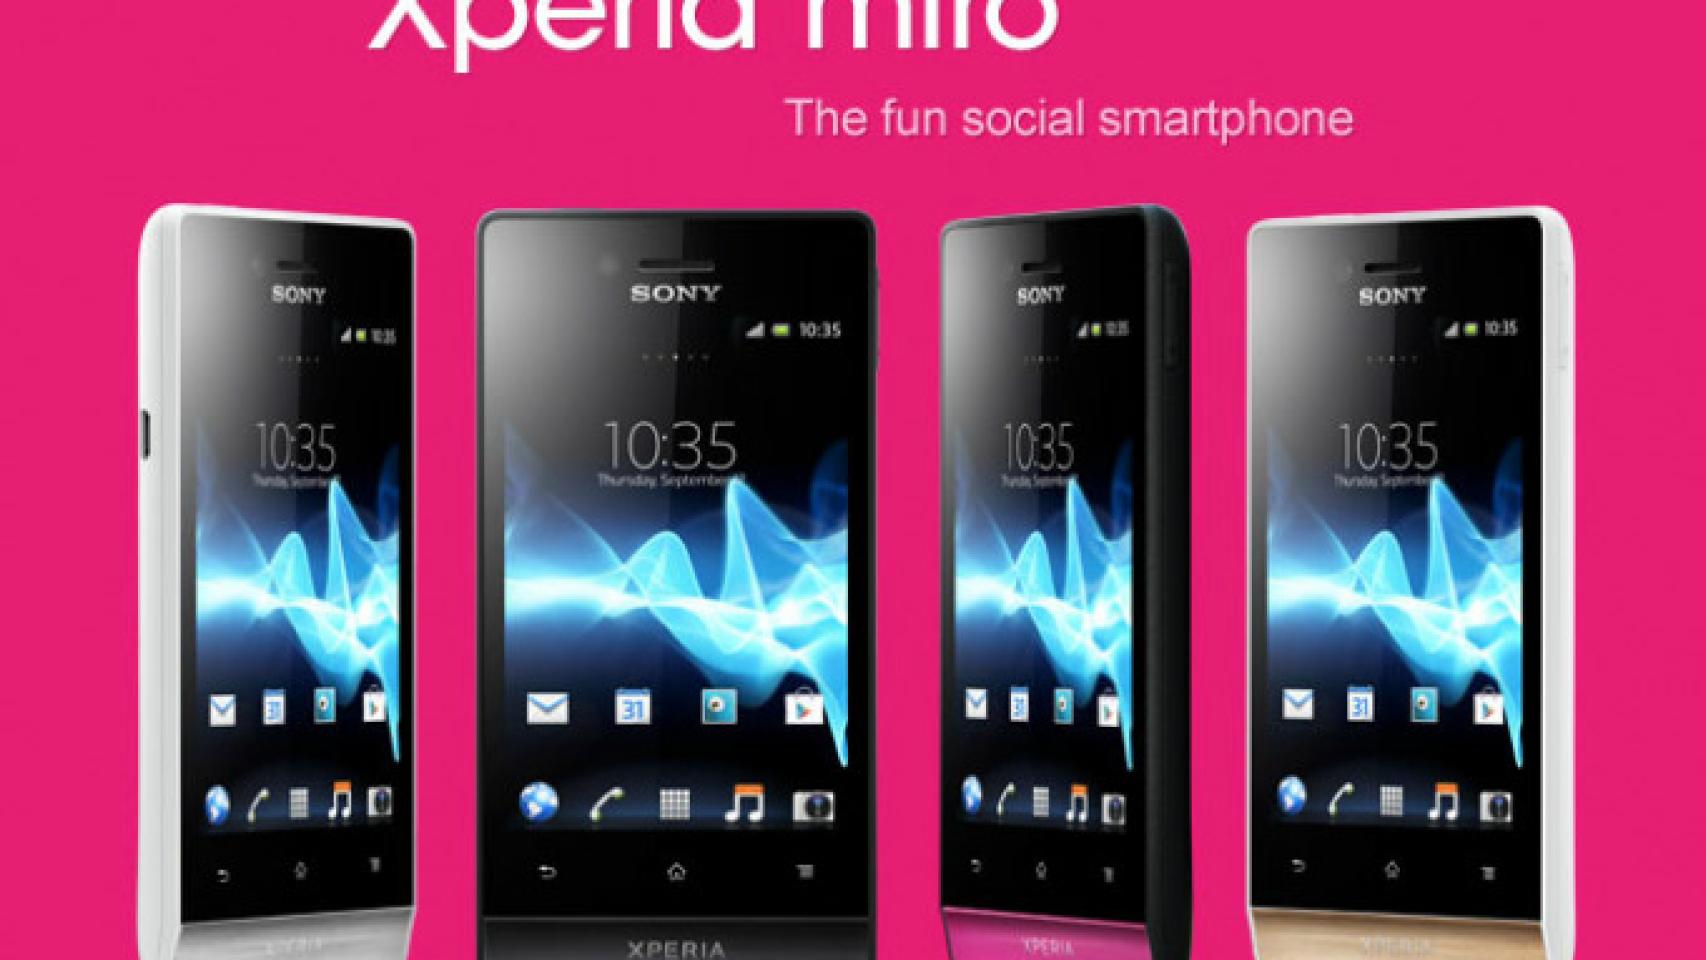 SONY Xperia Miro: Esta era la sorpresa: Un colorido smartphone de gama media